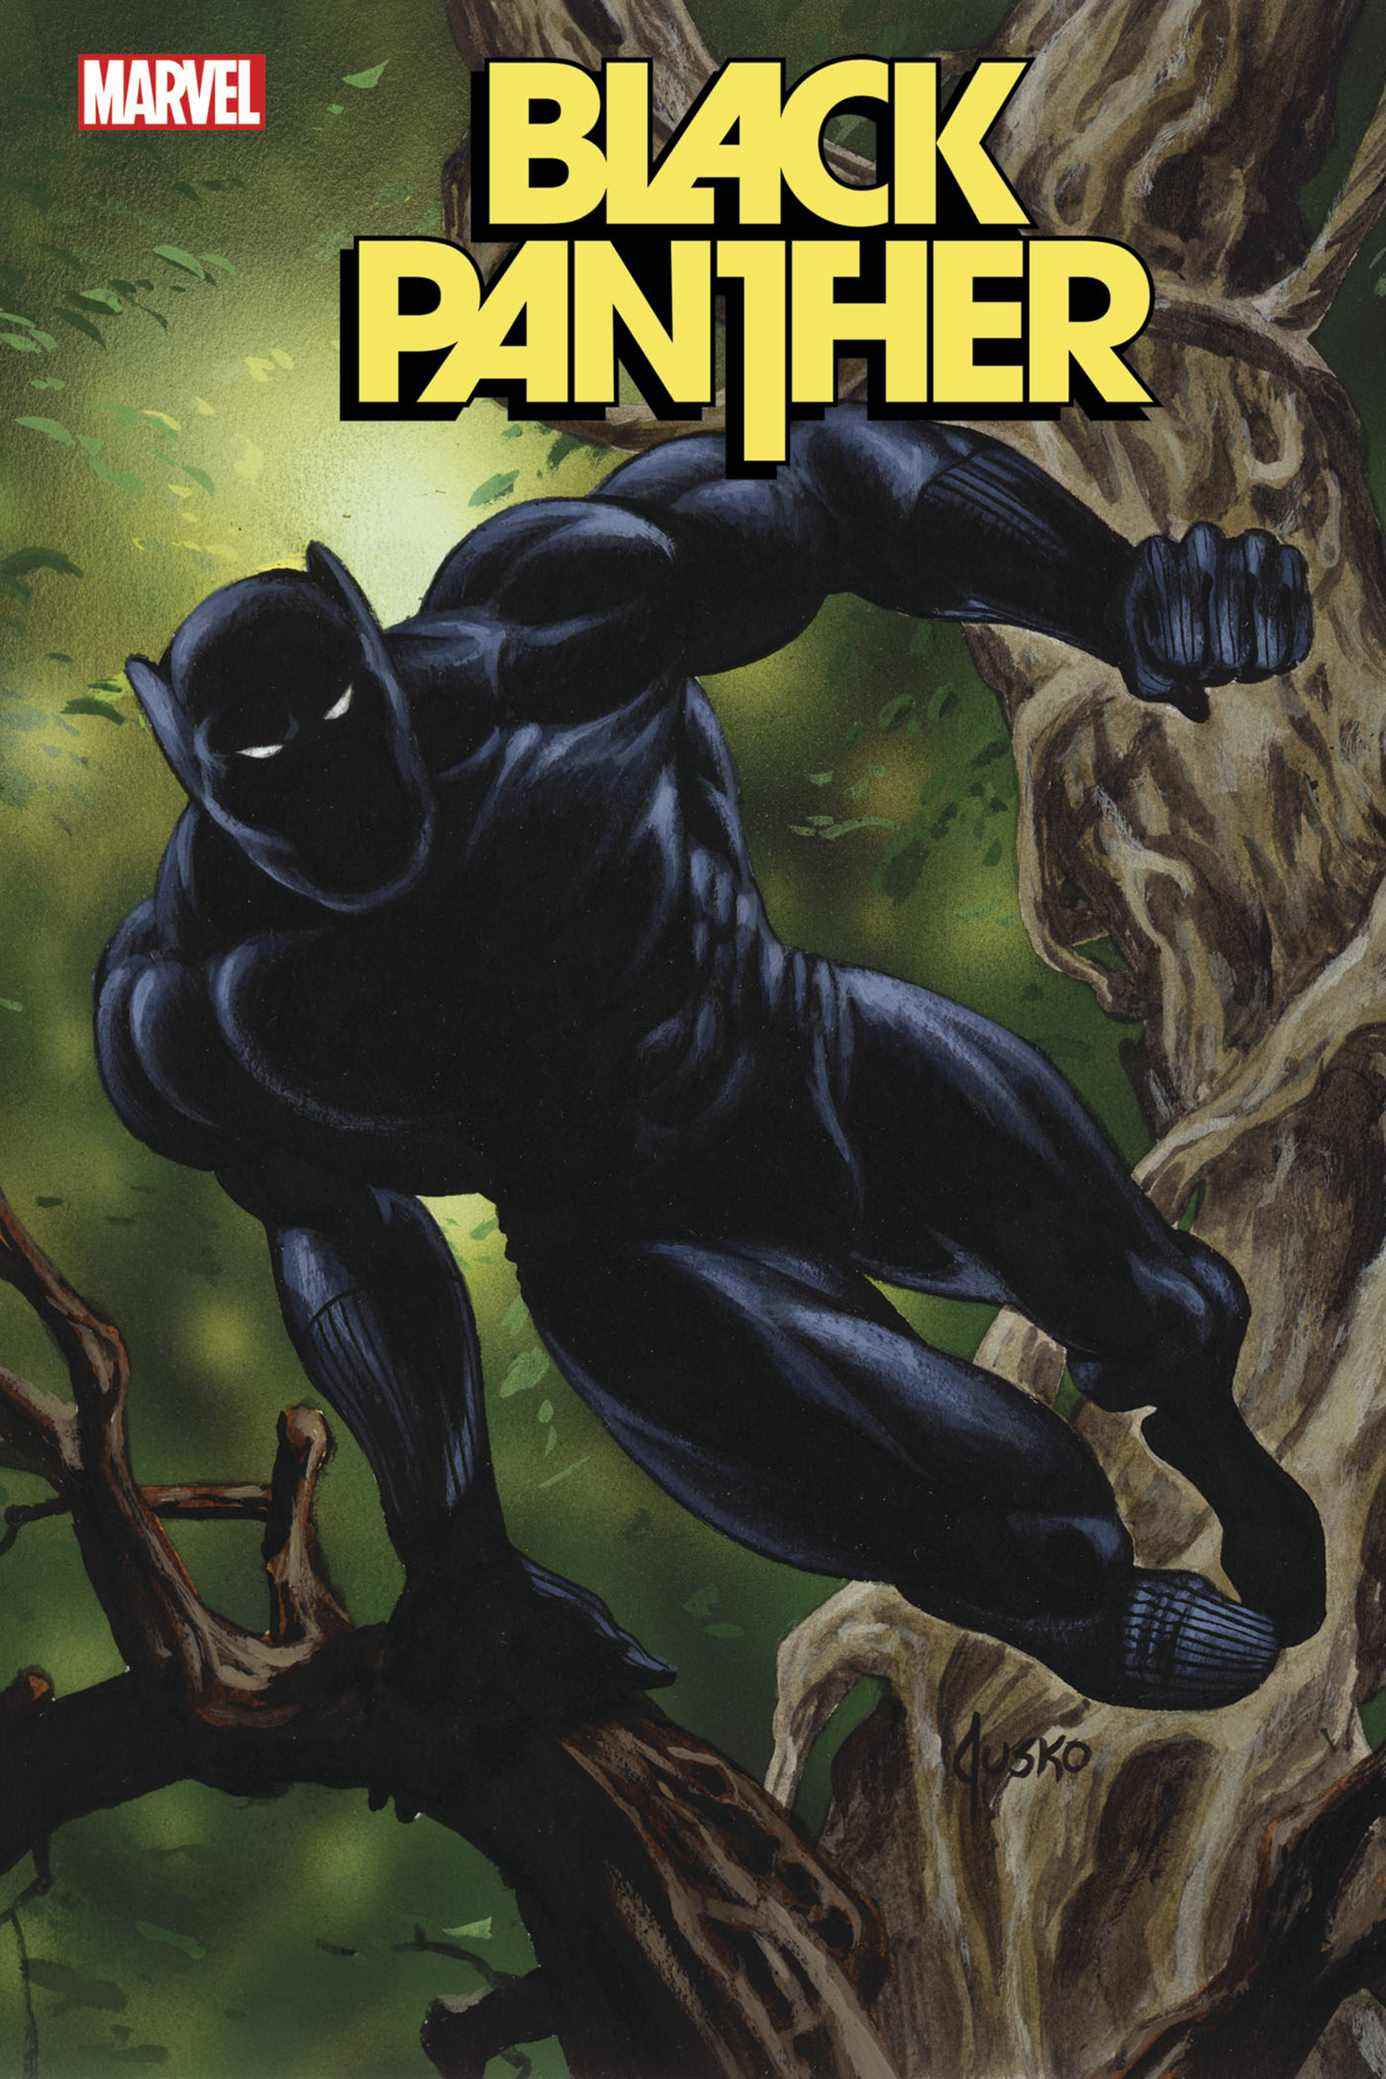 Couverture de la variante Black Panther #3